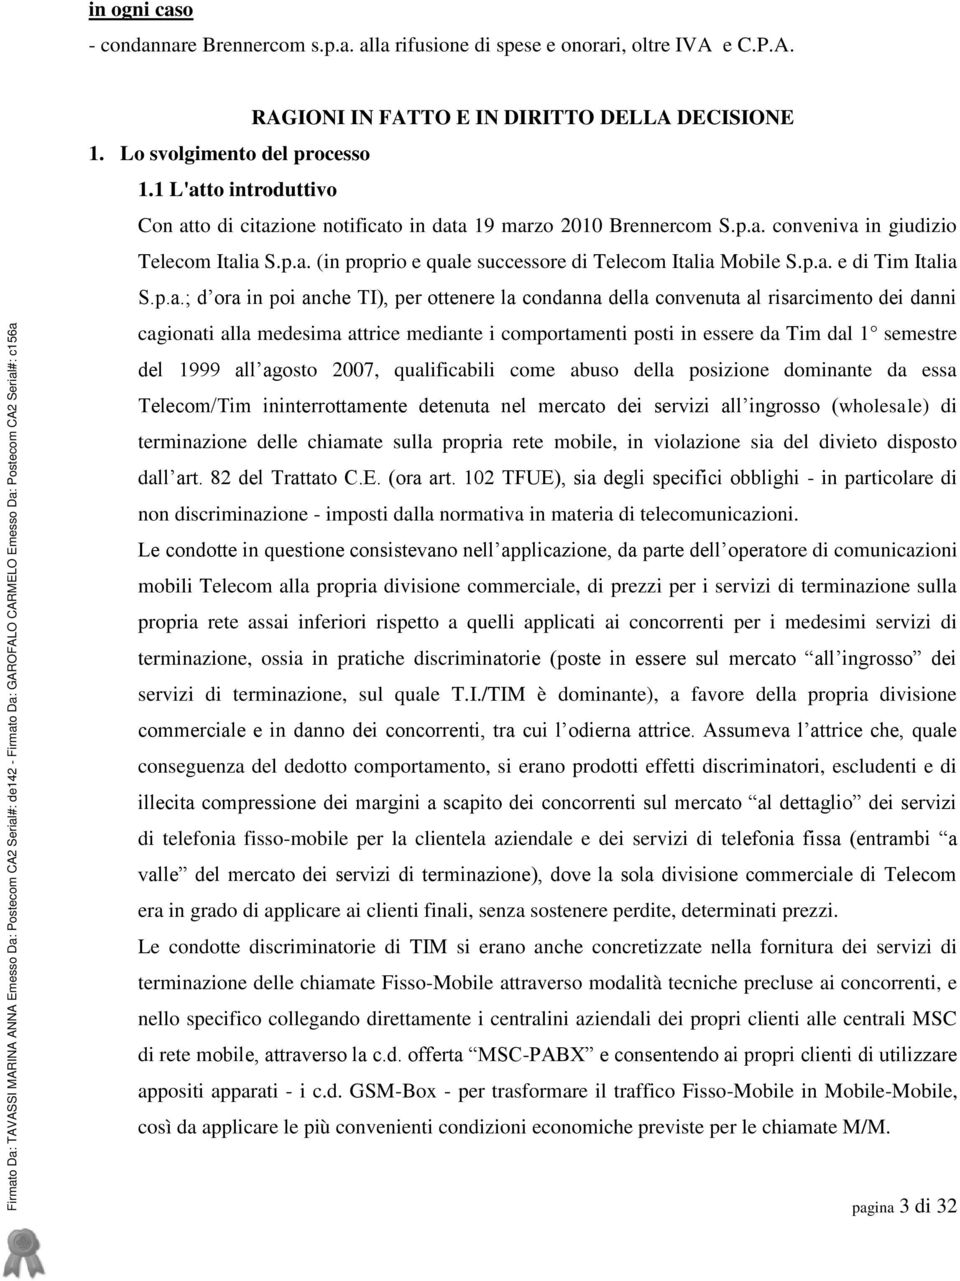 Lo svolgimento del processo 1.1 L'atto introduttivo Con atto di citazione notificato in data 19 marzo 2010 Brennercom S.p.a. conveniva in giudizio Telecom Italia S.p.a. (in proprio e quale successore di Telecom Italia Mobile S.